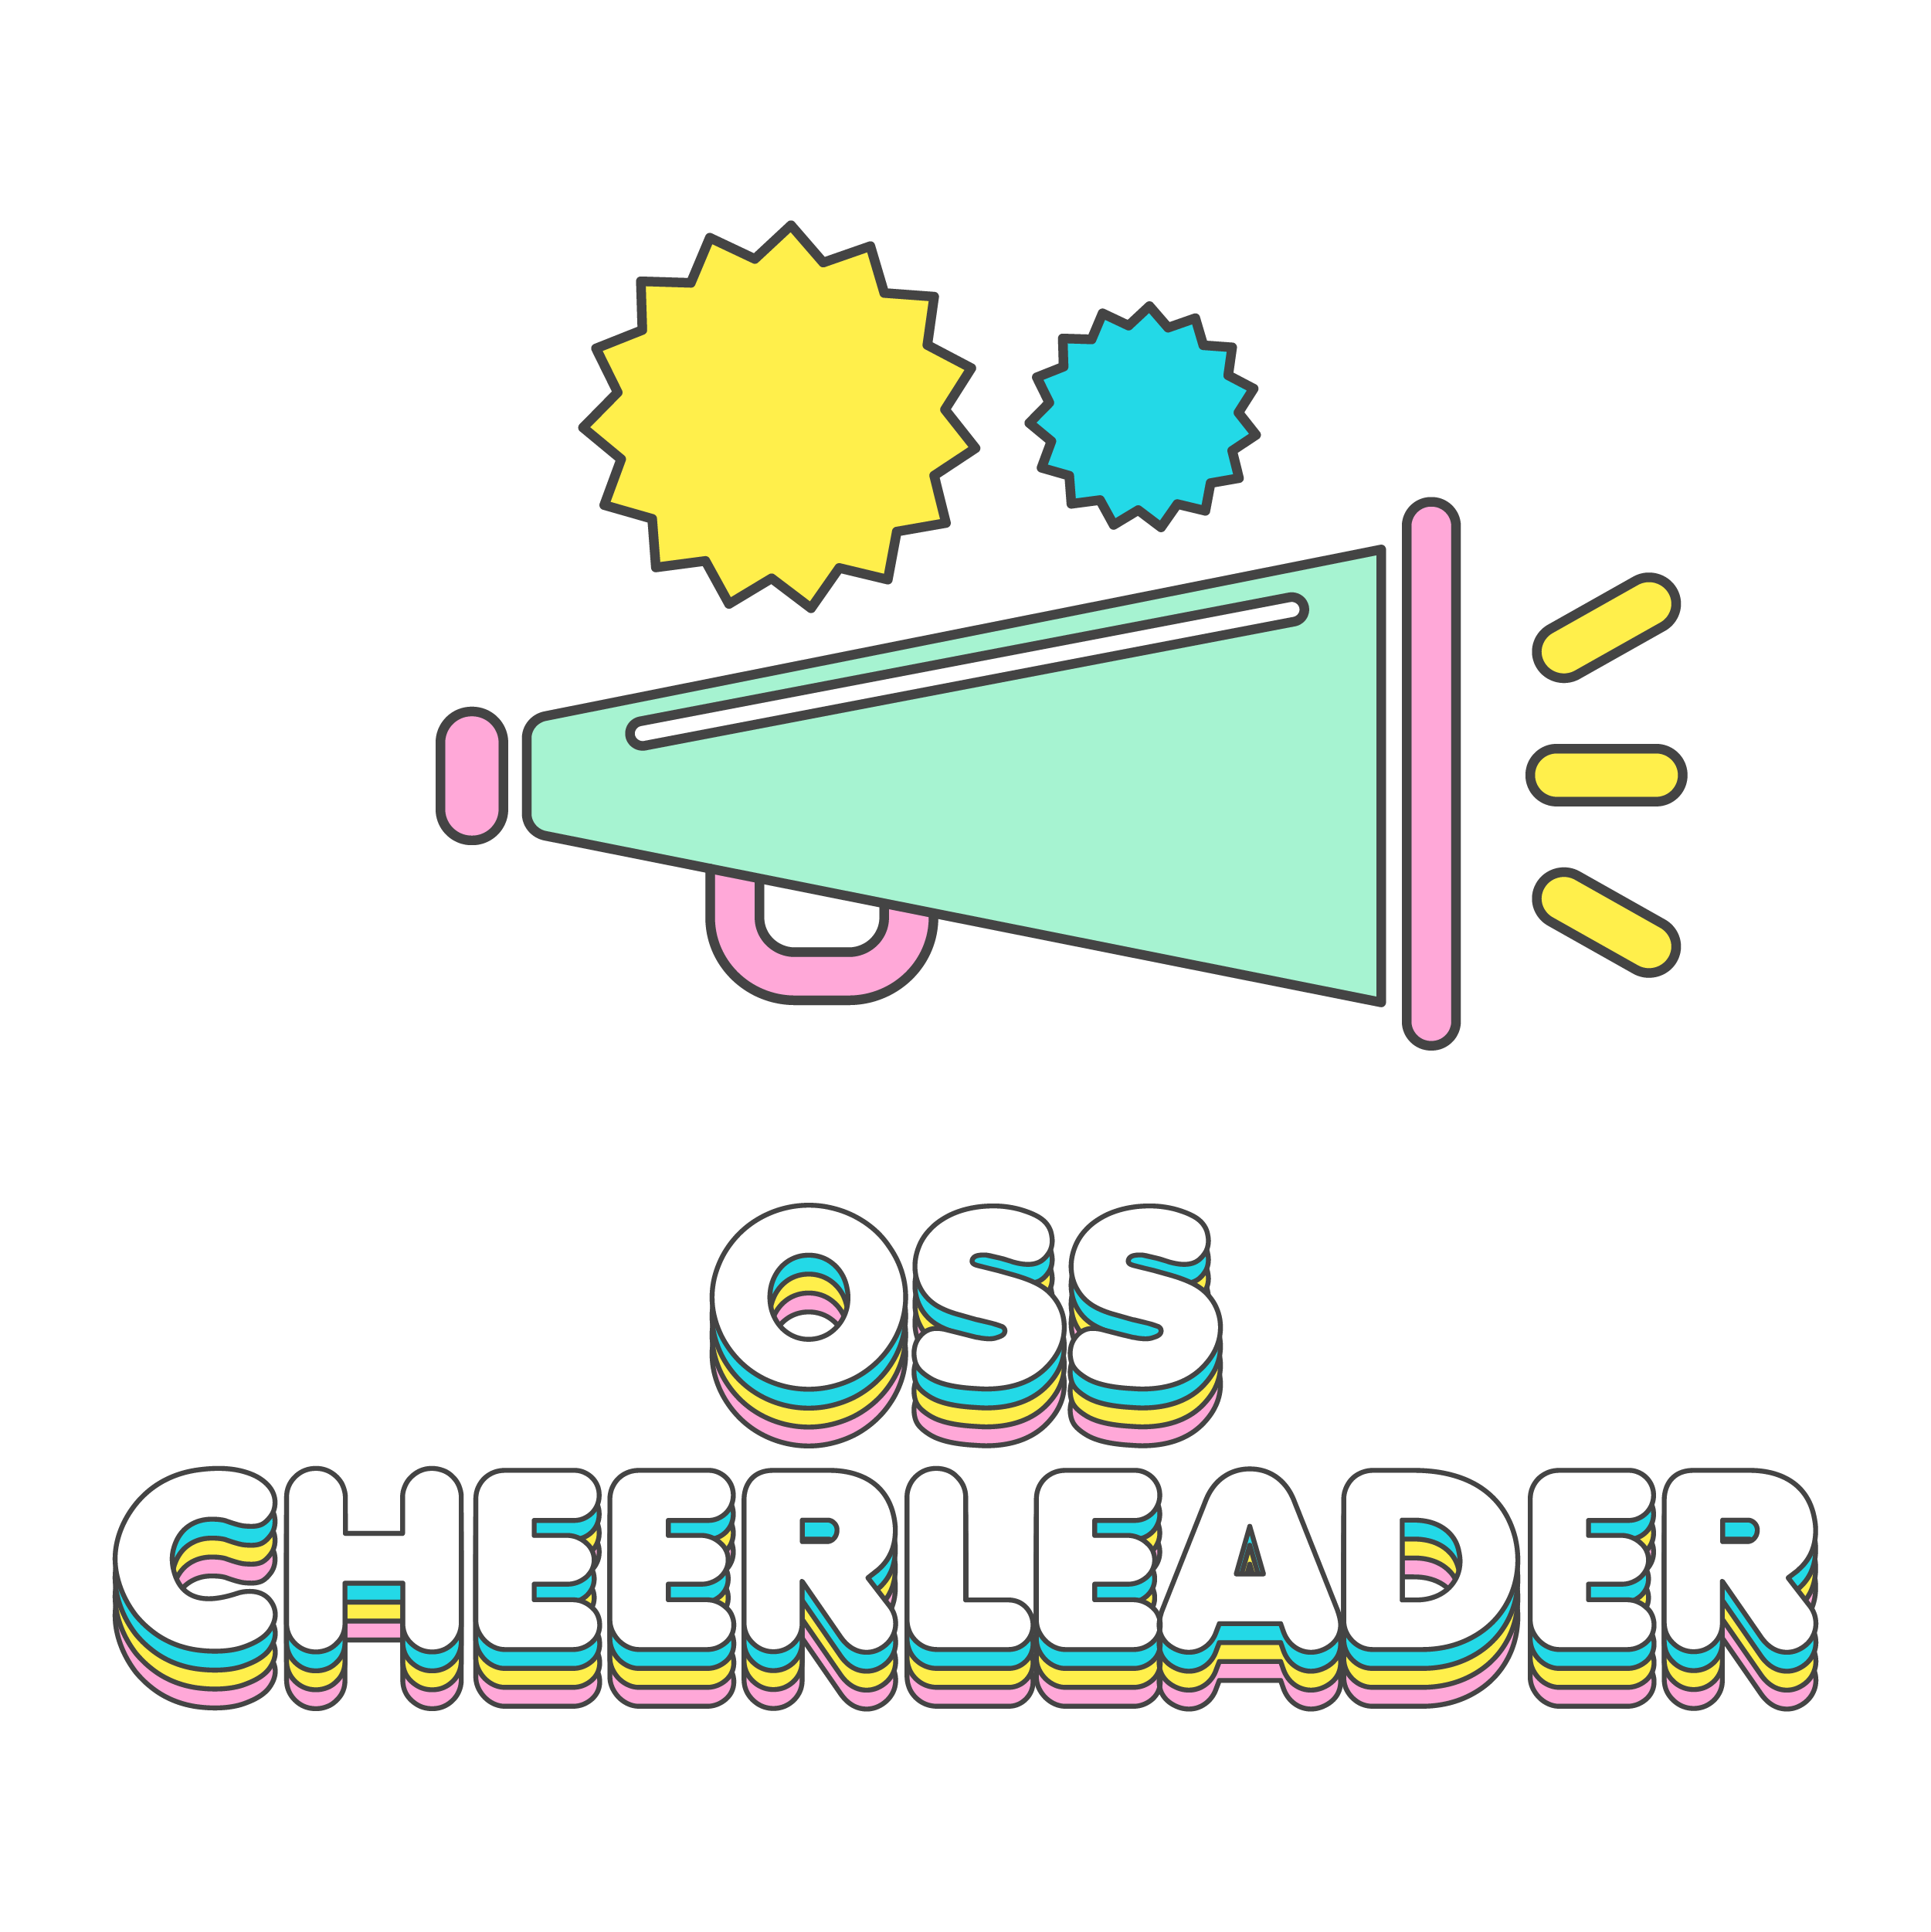 OSS Cheer Leader